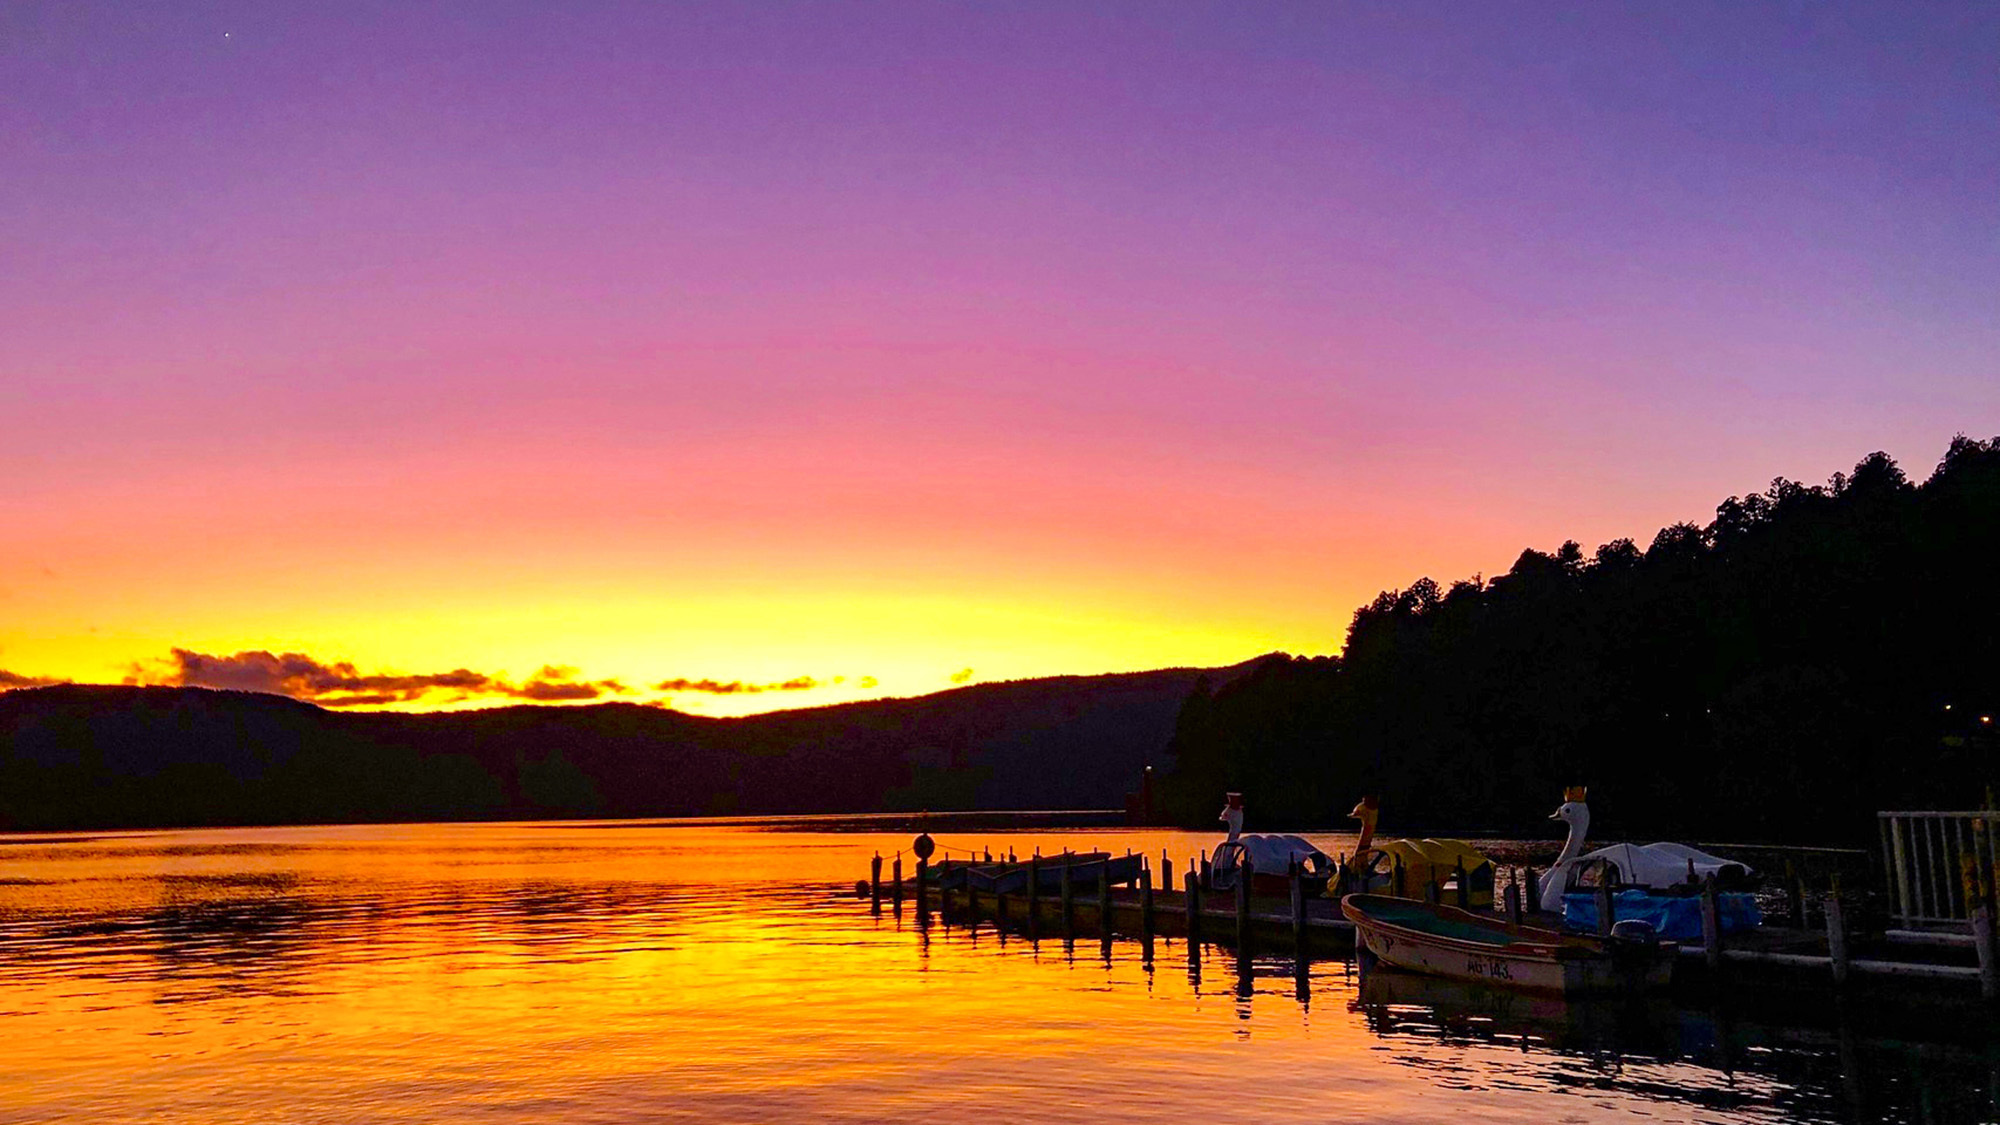 ・芦ノ湖を染める夕日が幻想的な雰囲気を醸し出します